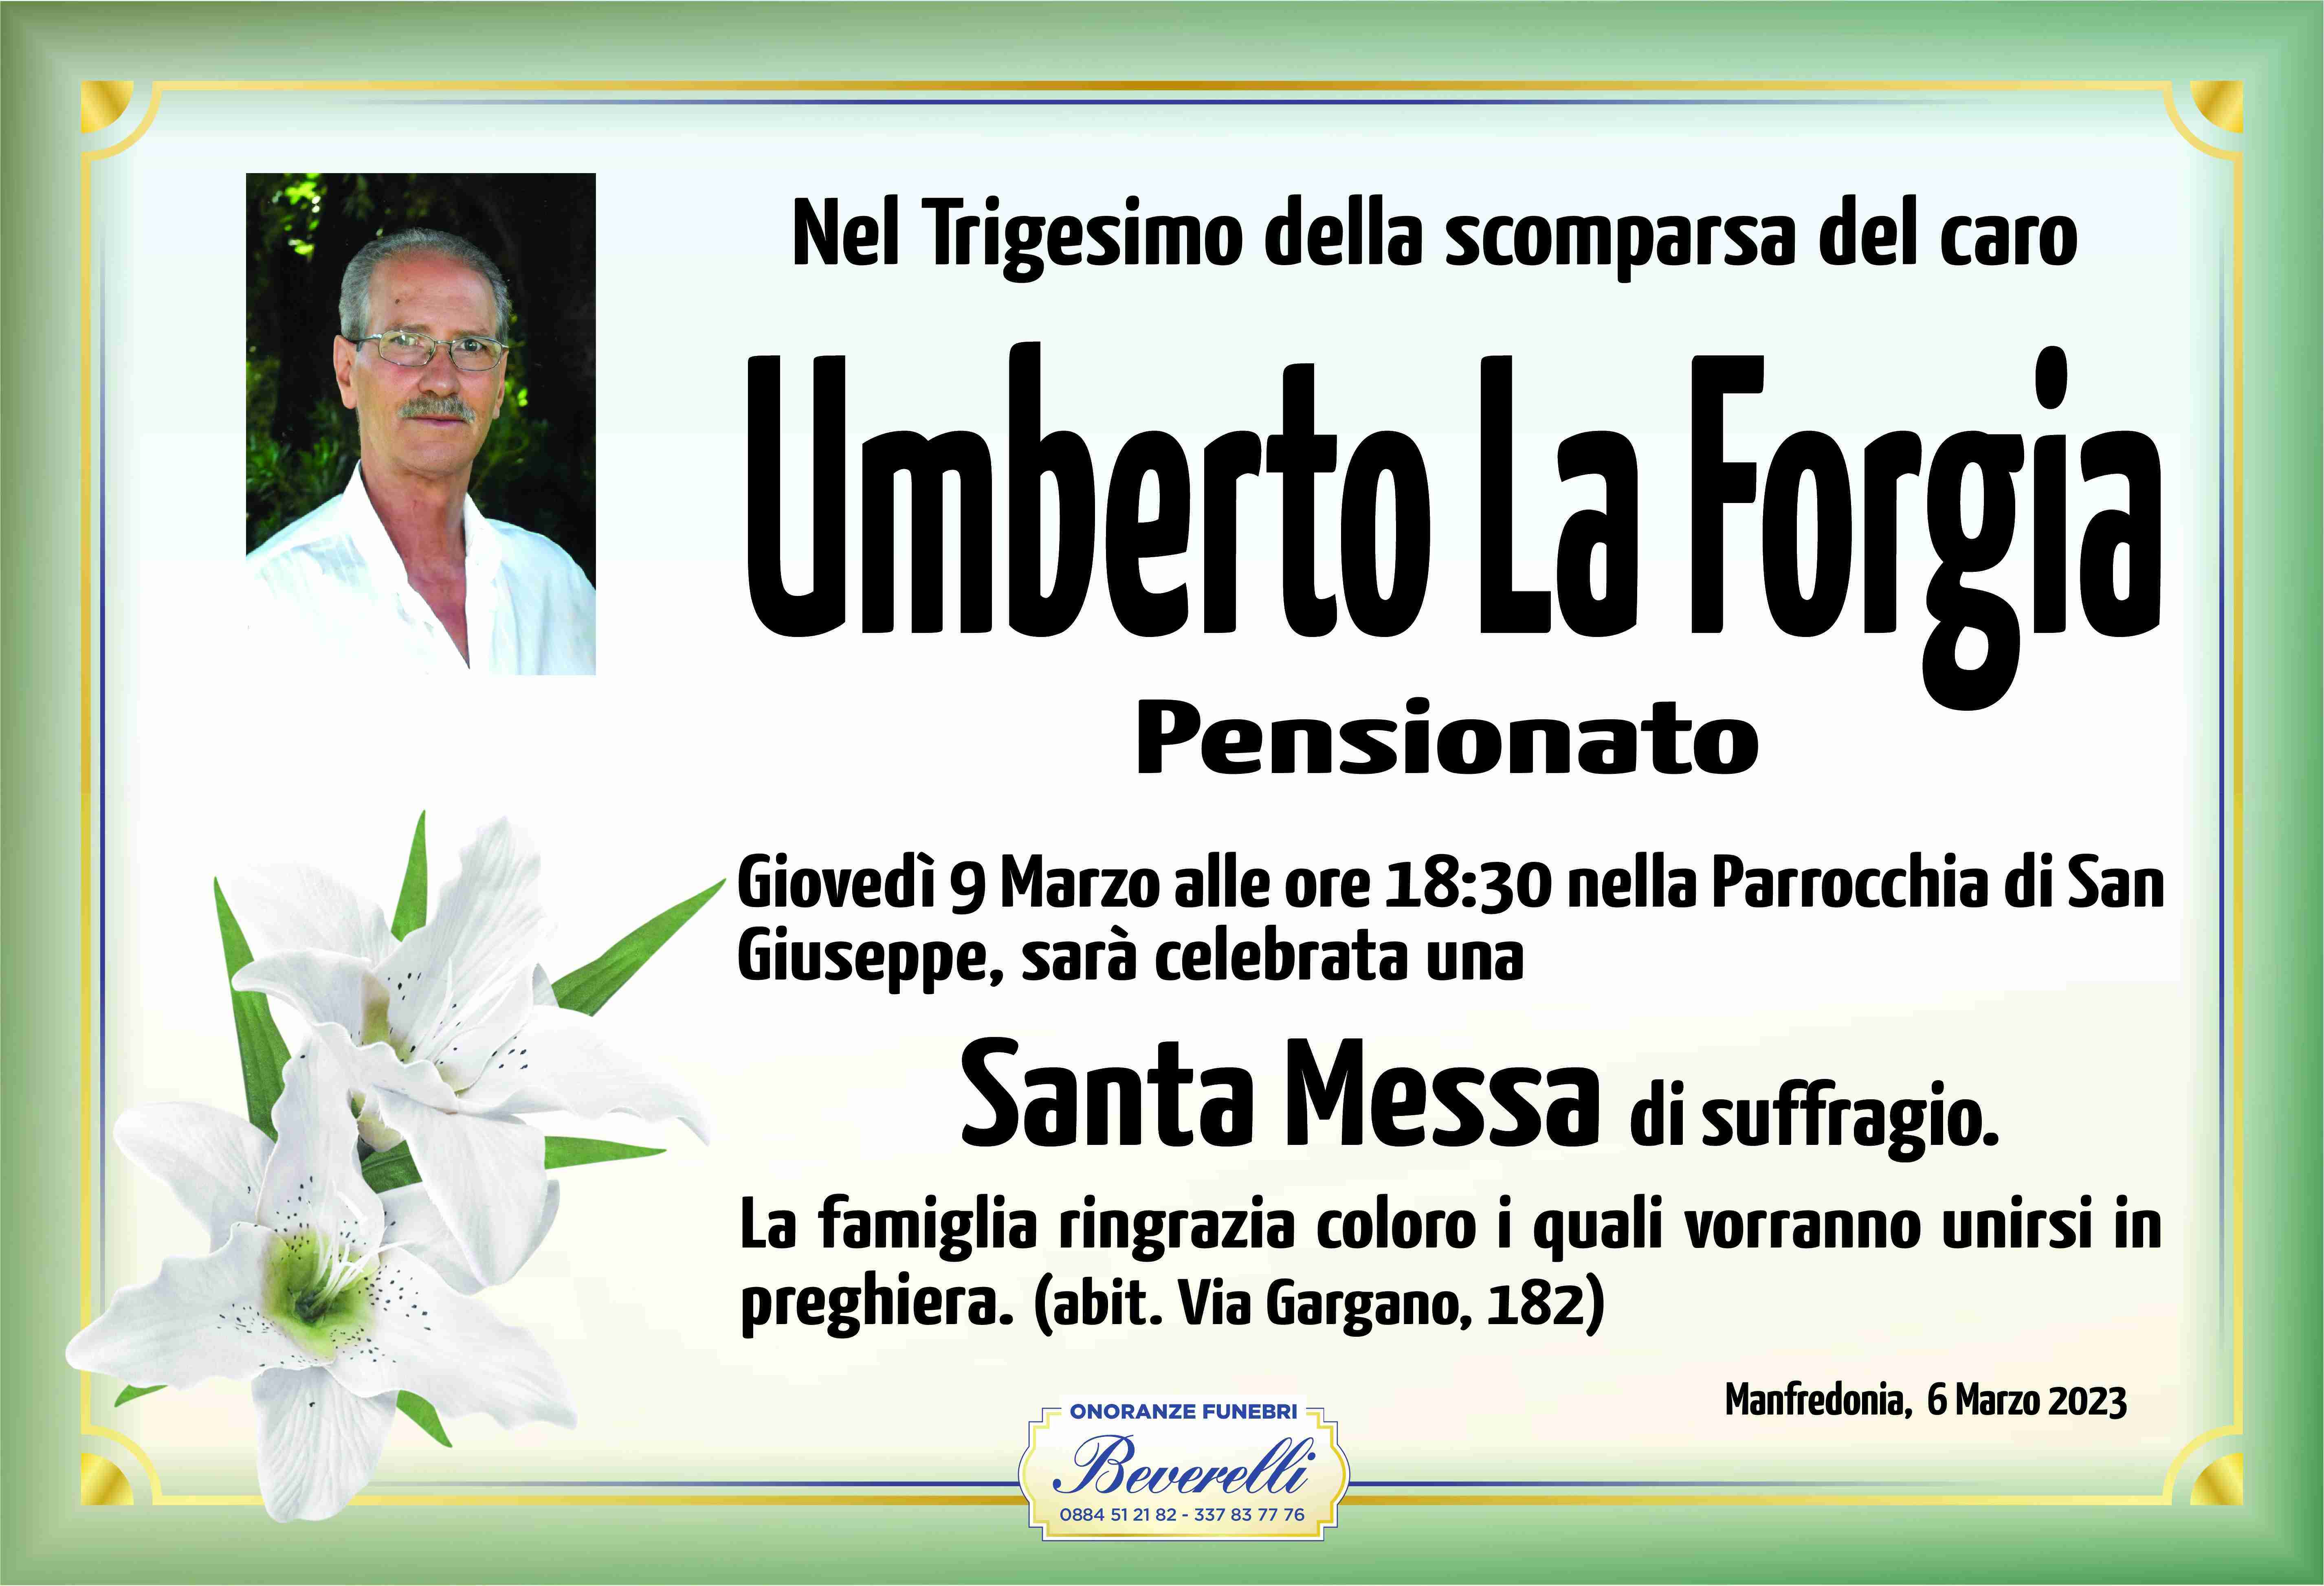 Umberto La Forgia